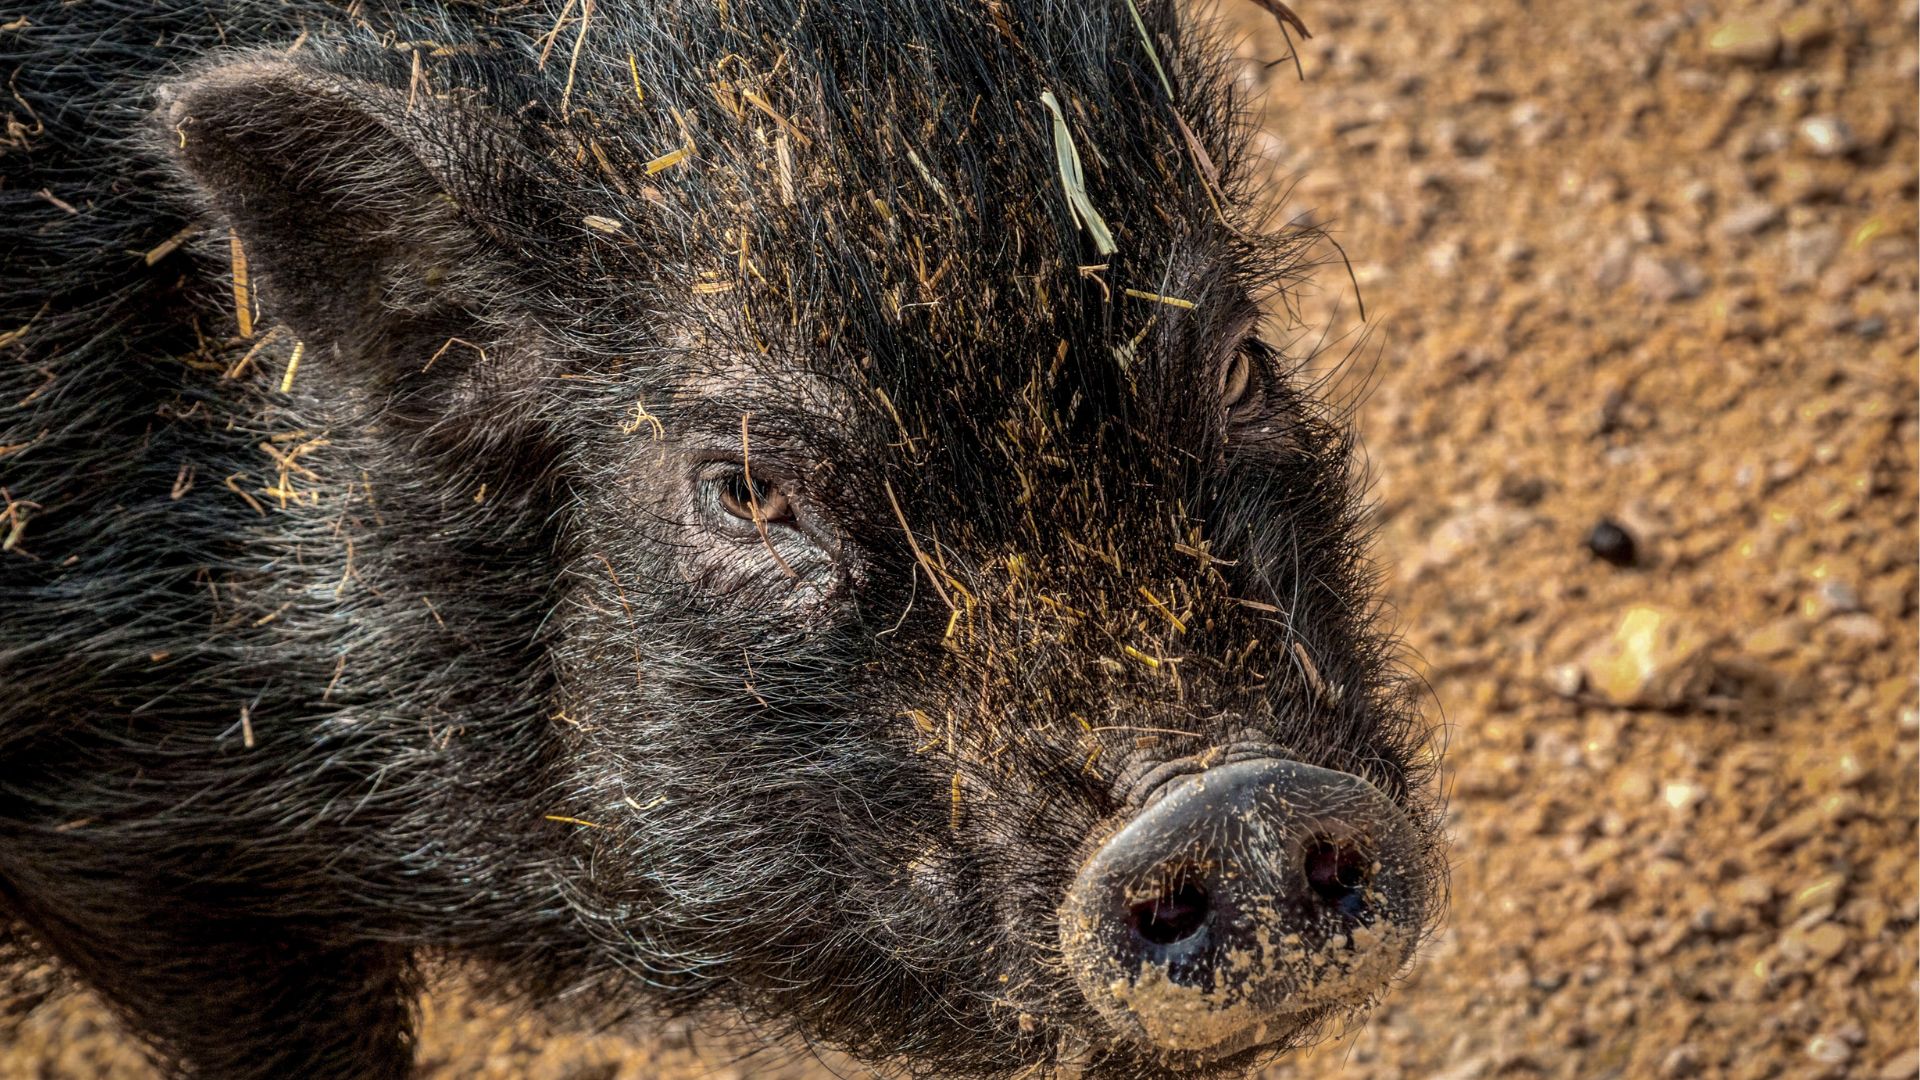 Os porcos-do-mato são animais importantes para o meio ambiente, pois ajudam na dispersão de sementes e na manutenção da vegetação.